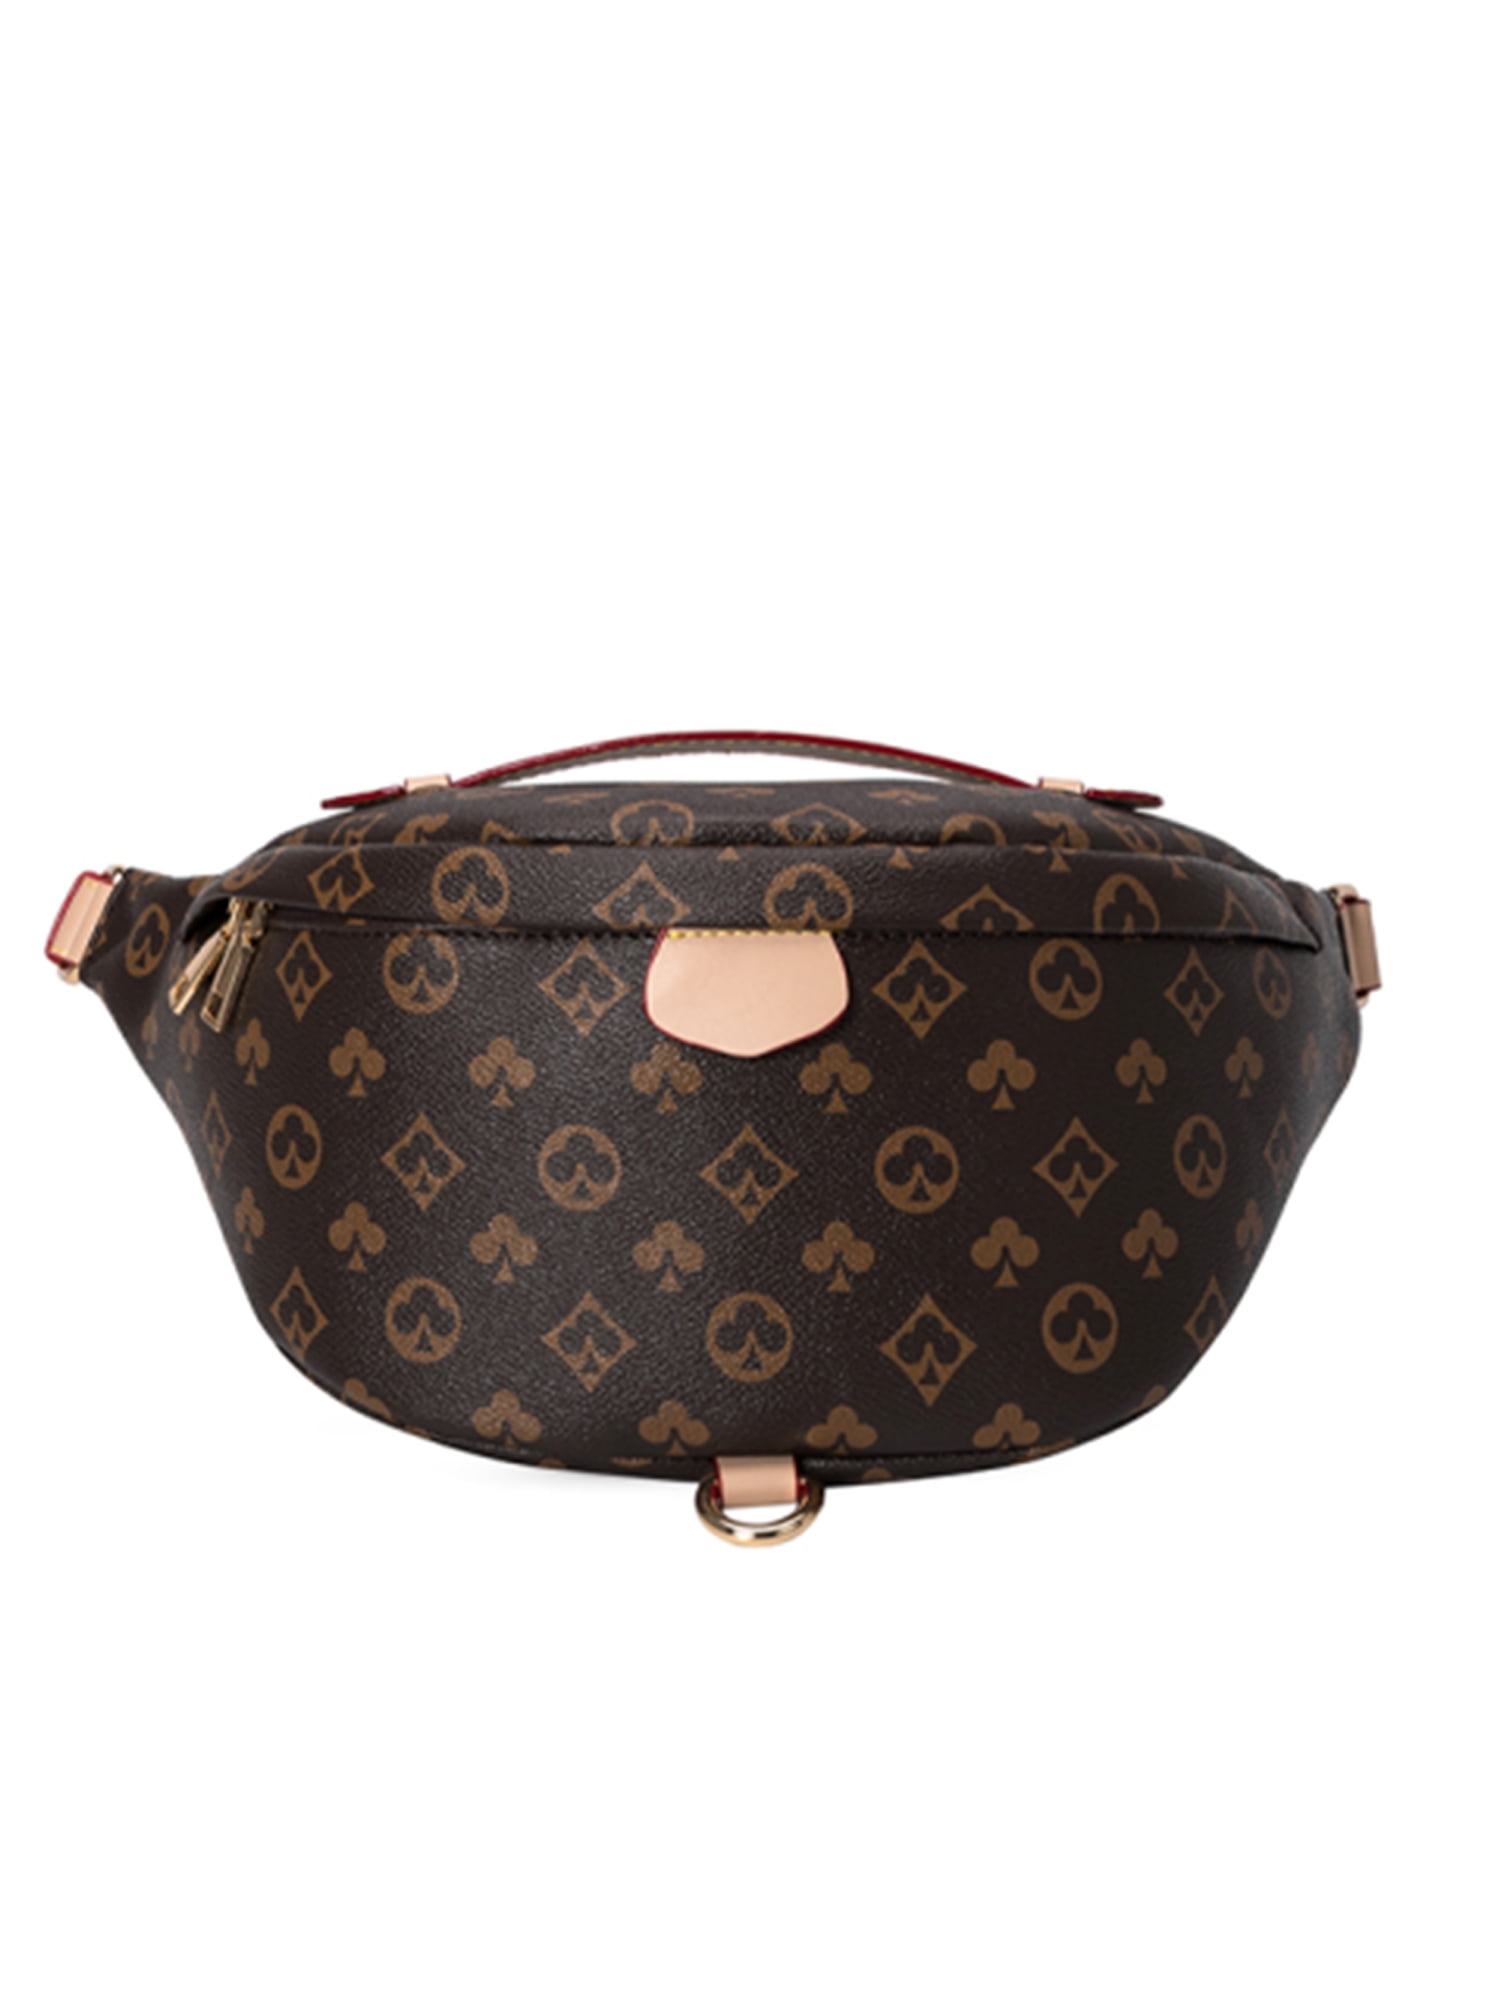 Louis Vuitton lv man belt chest waist bag  Louis vuitton crossbody bag, Louis  vuitton backpack, Louis vuitton bag